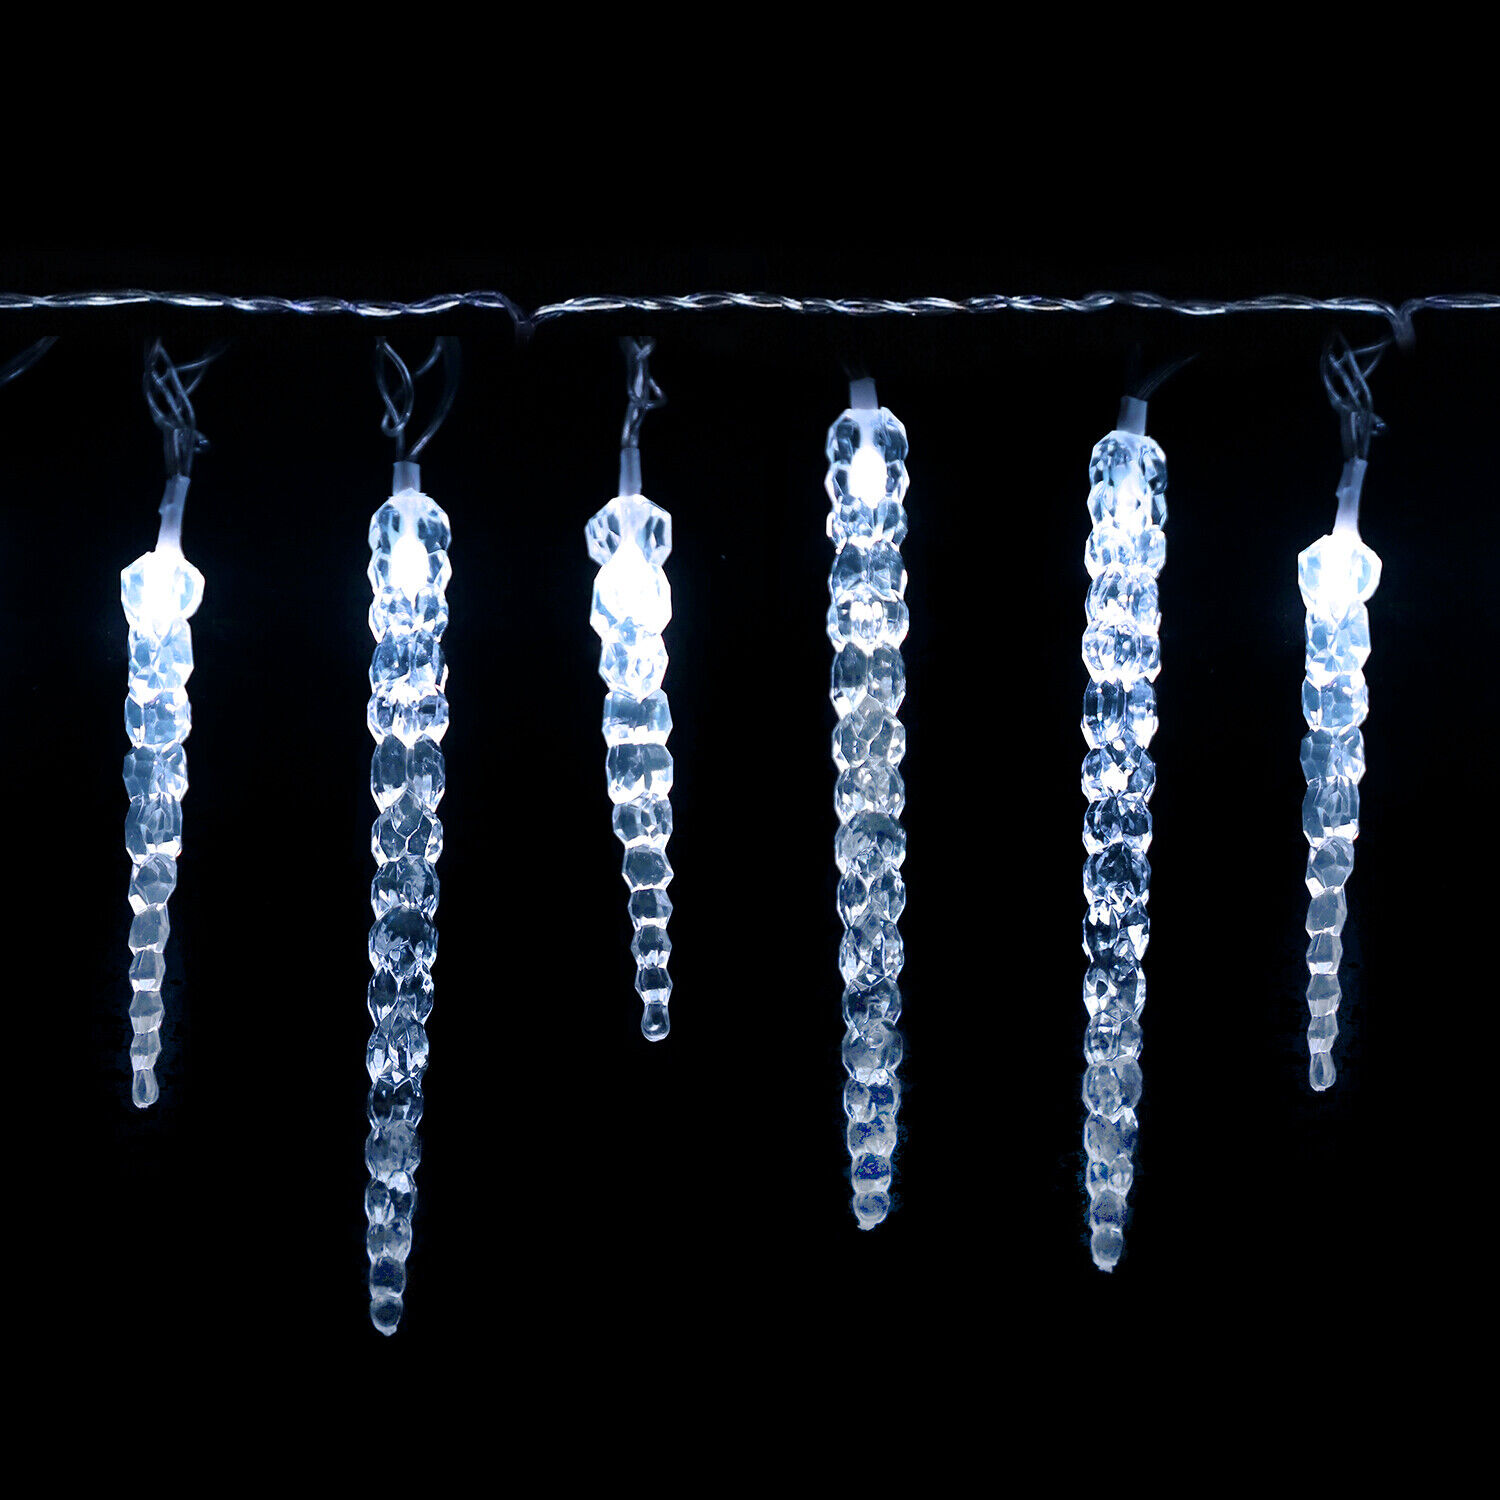 LED Lichterkette Eiszapfen Eisregen Deko Beleuchtung Weihnachten Innen Außen